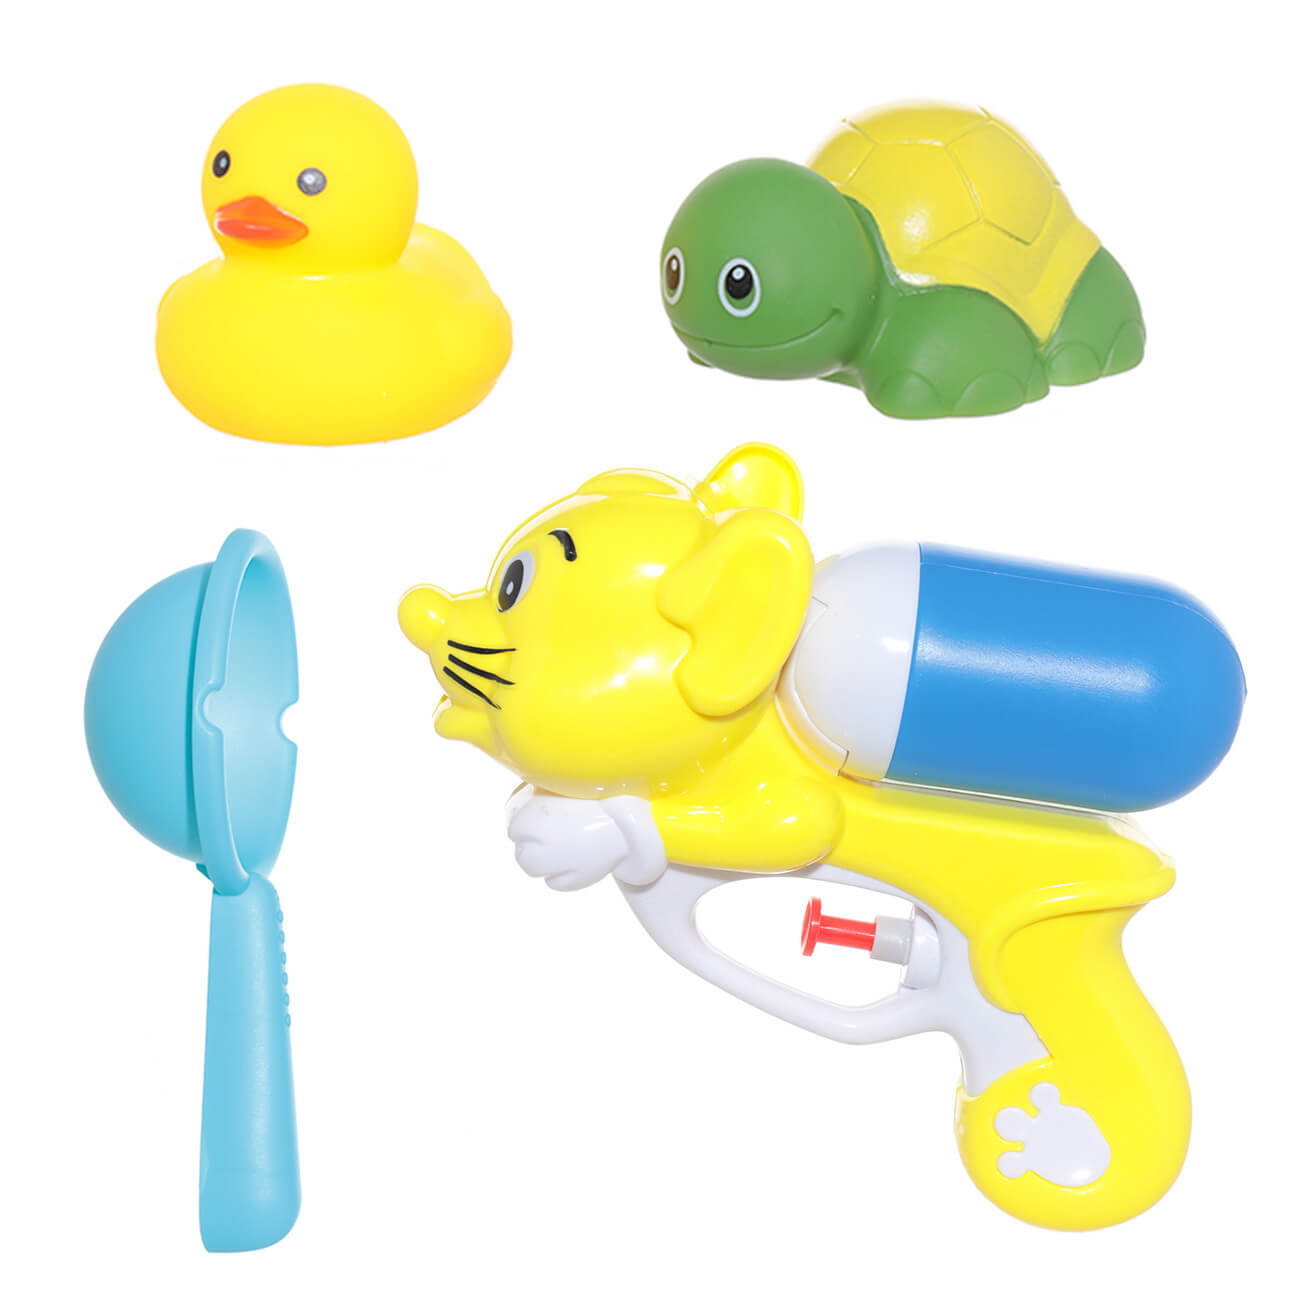 Набор игрушек для купания, 4 пр, водный пистолет/игрушки, резина/пластик, желтый, Duck yellow